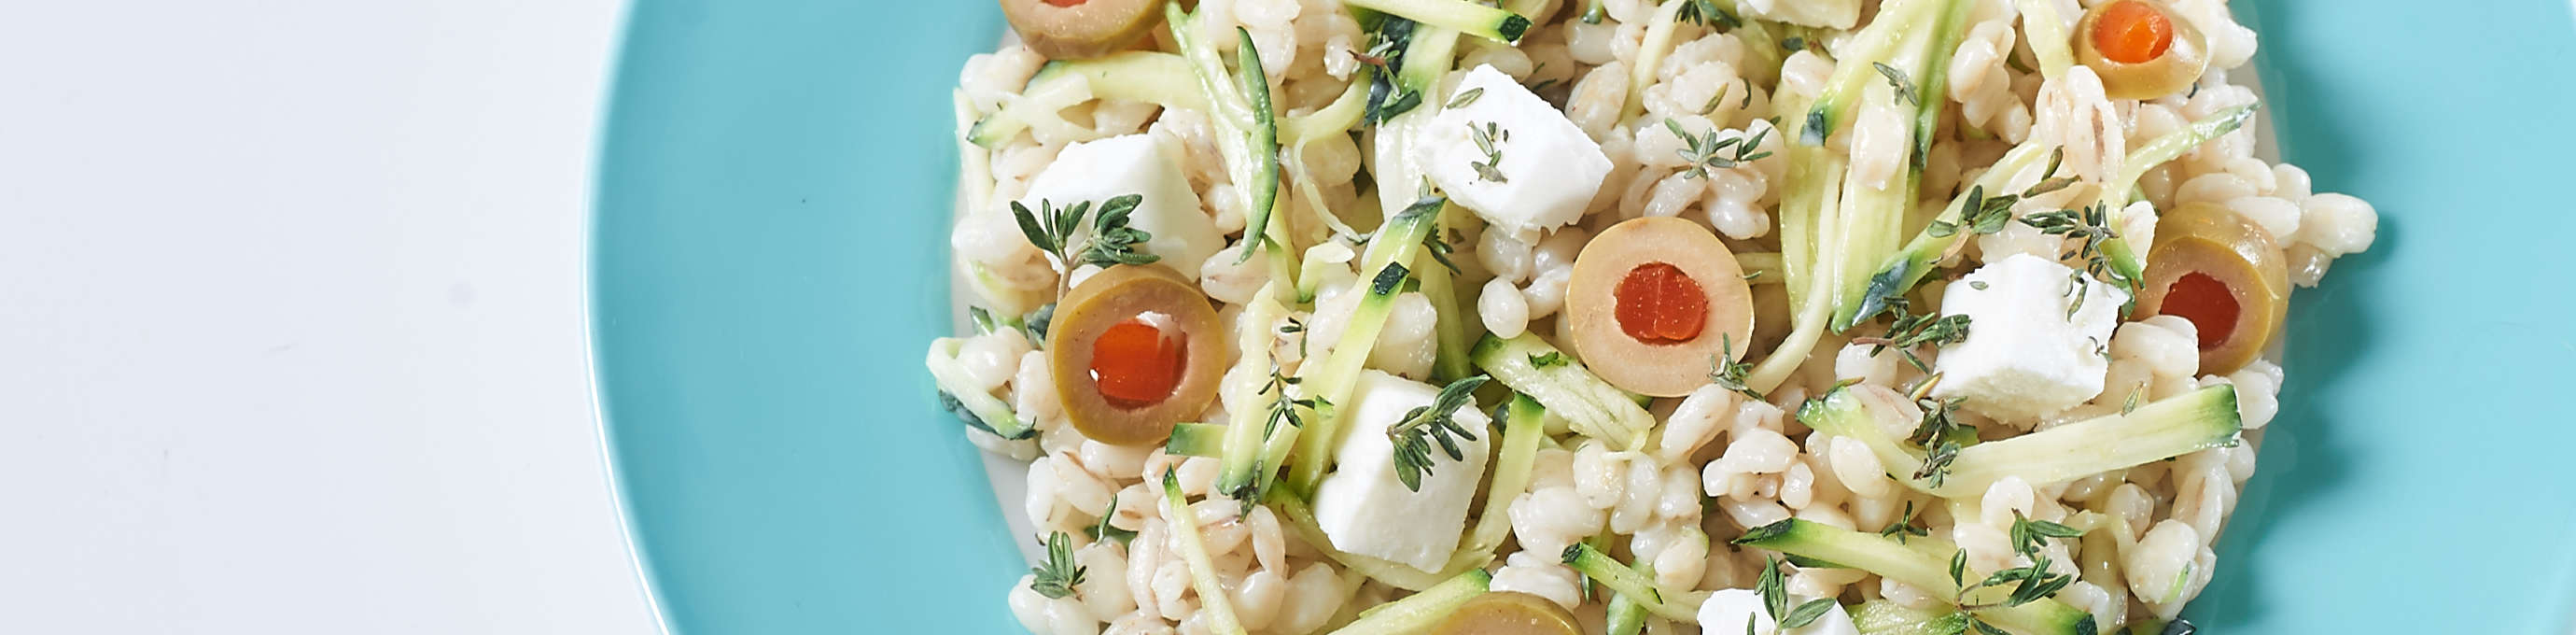 Salat aus Gerstoni Gourmet Gerste mit Zucchini, Feta und Olivenscheibchen auf hellblauem Teller